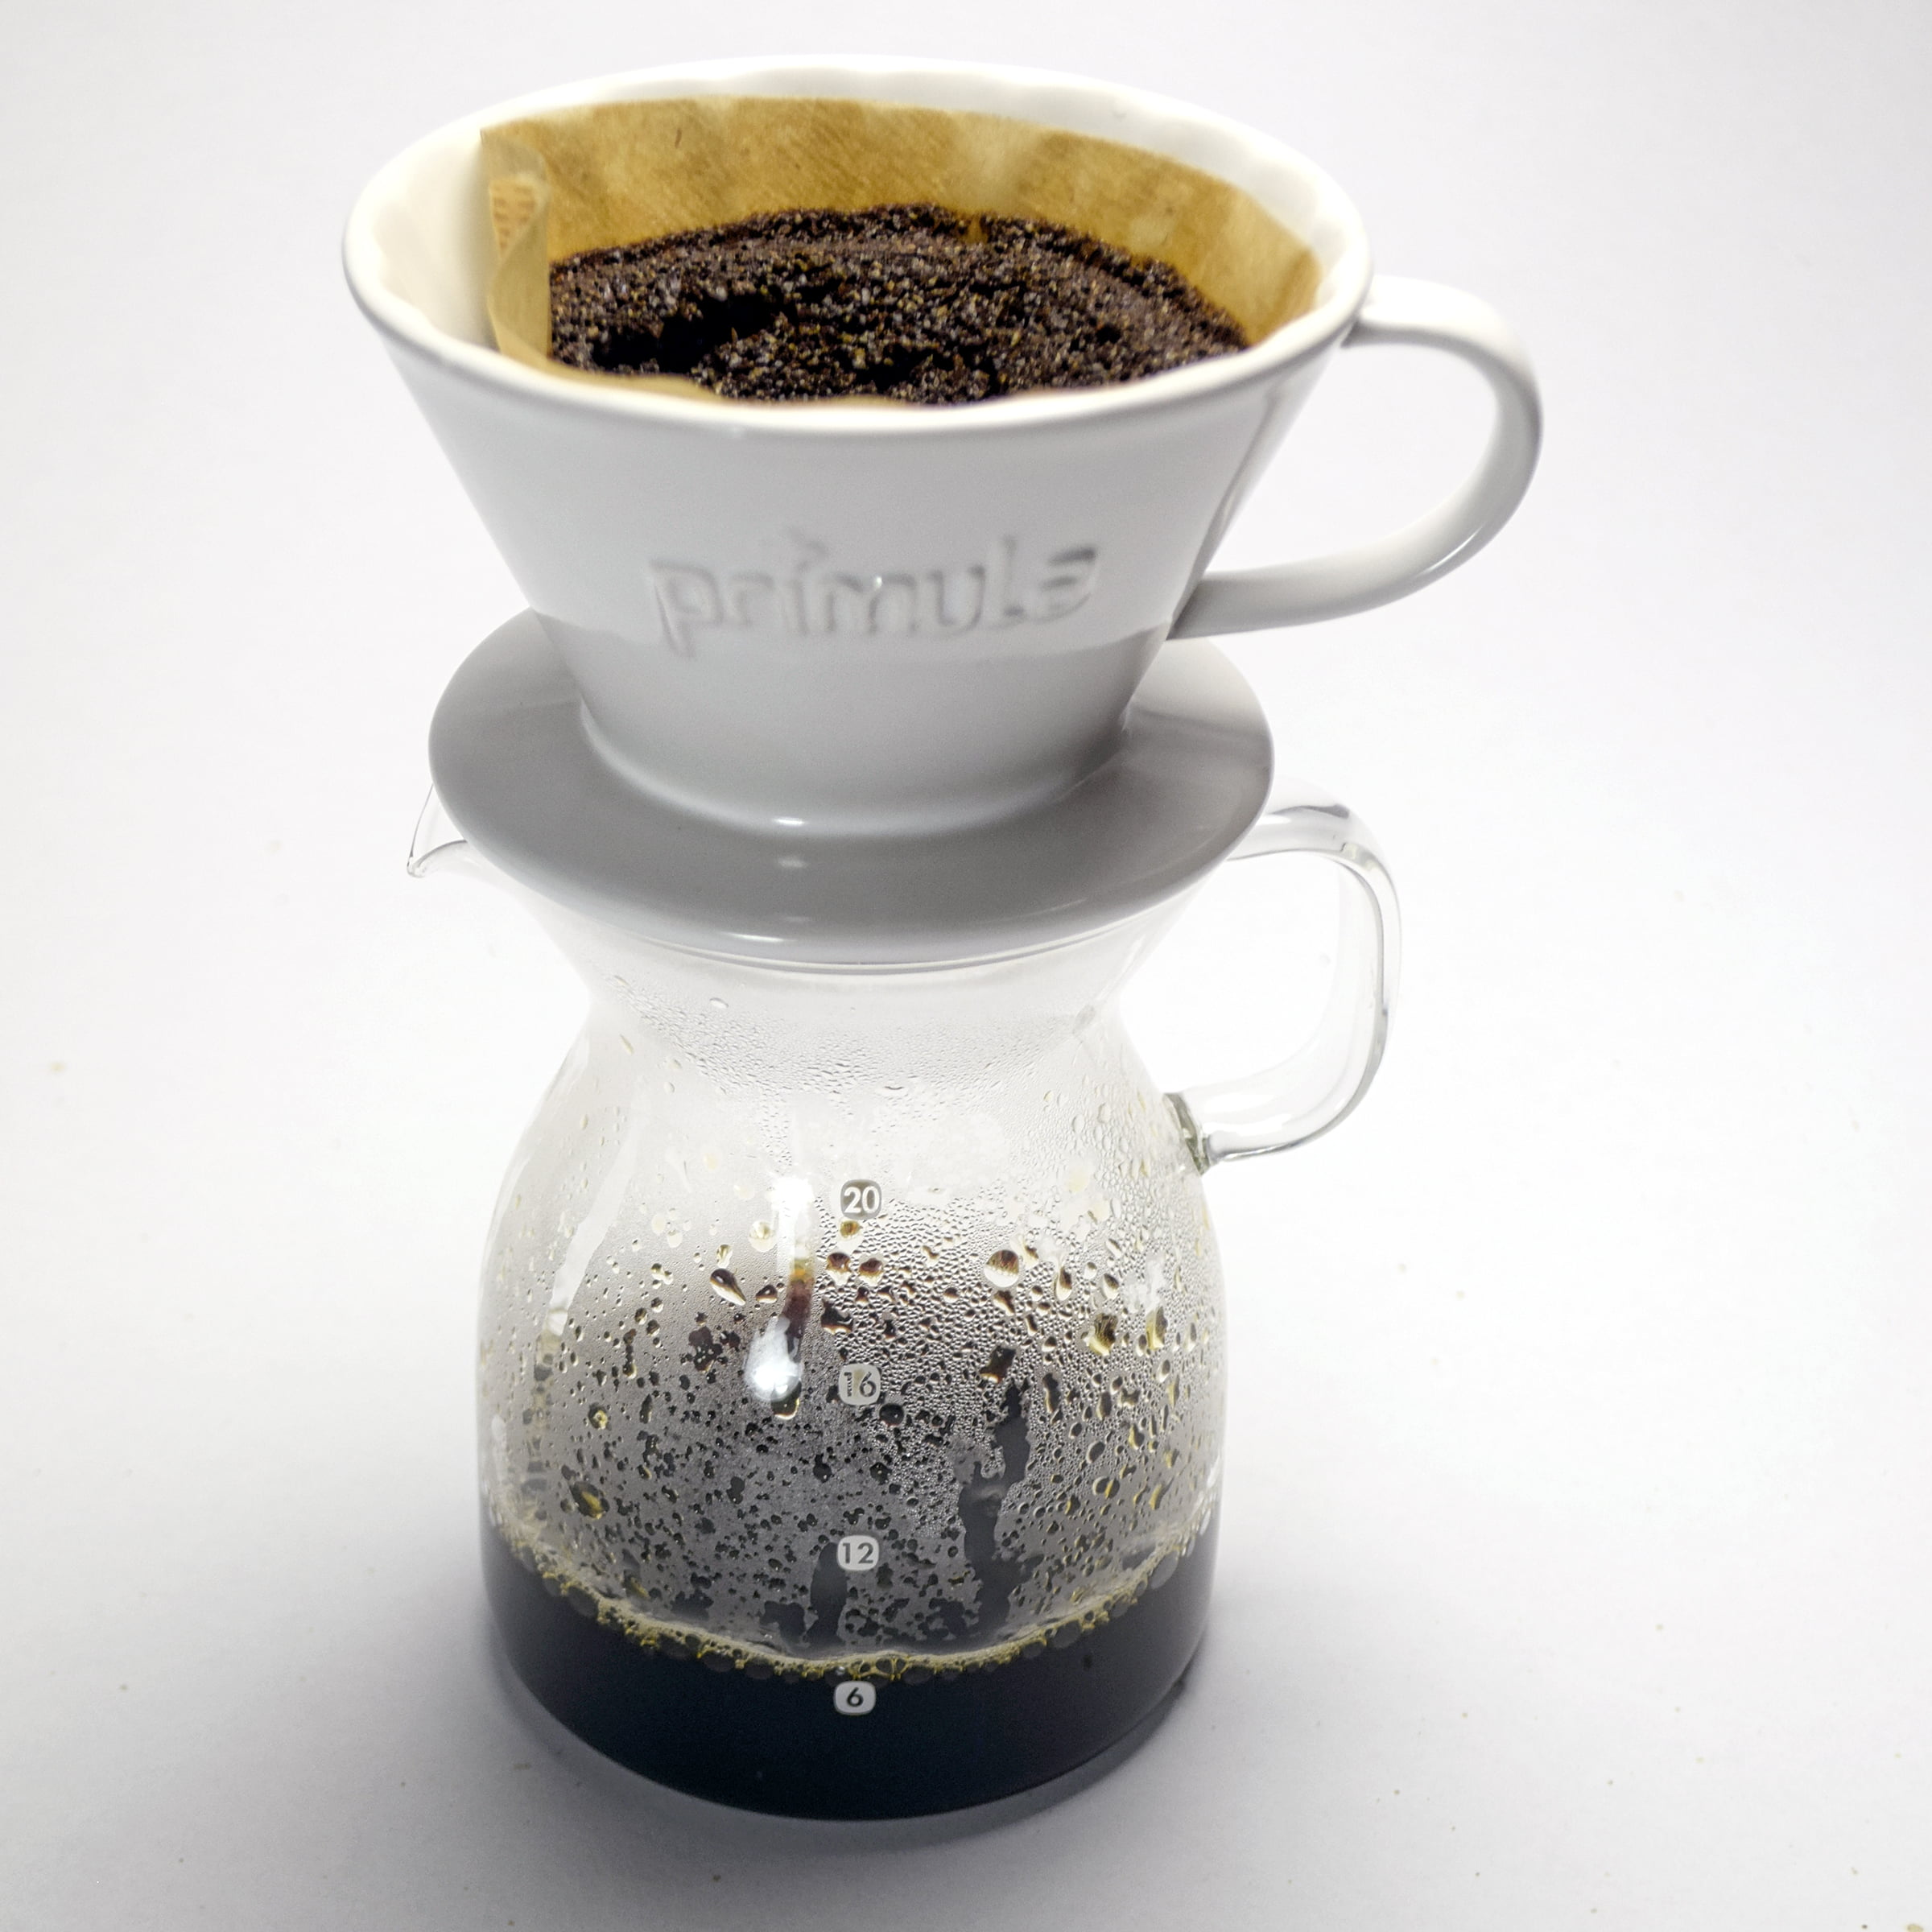 Primula Coffee Dripper, Pour Over, Seneca Black, 1 Cup